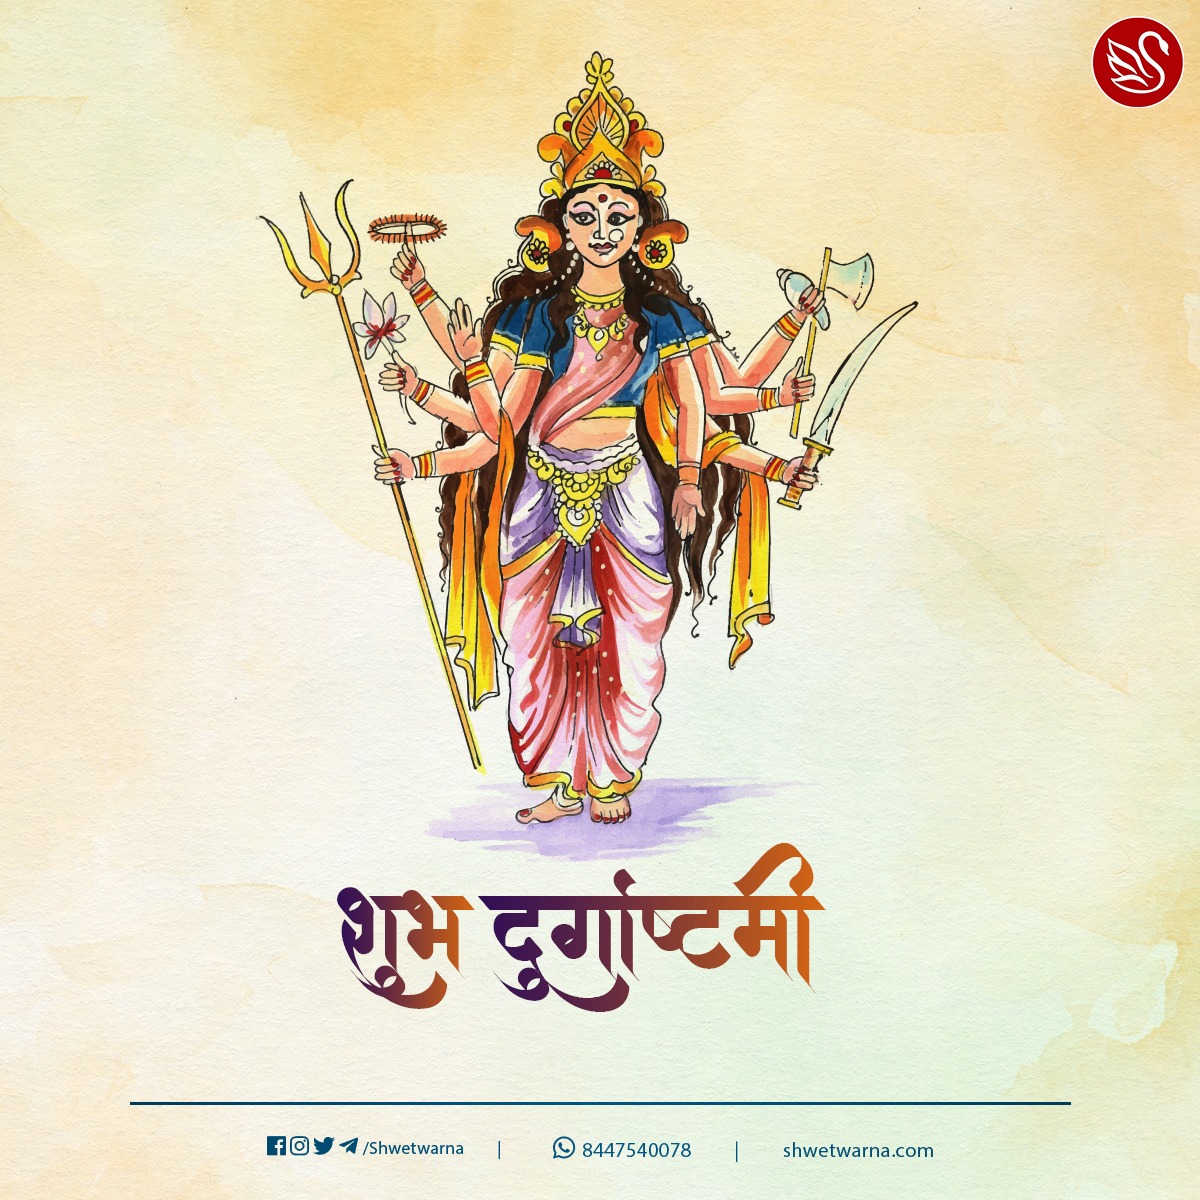 आप सभी को दुर्गाष्टमी की हार्दिक शुभकामनाएं। 🙏 #Durgashtami #DurgaPuja #DurgaPuja2021 #Shwetwarna